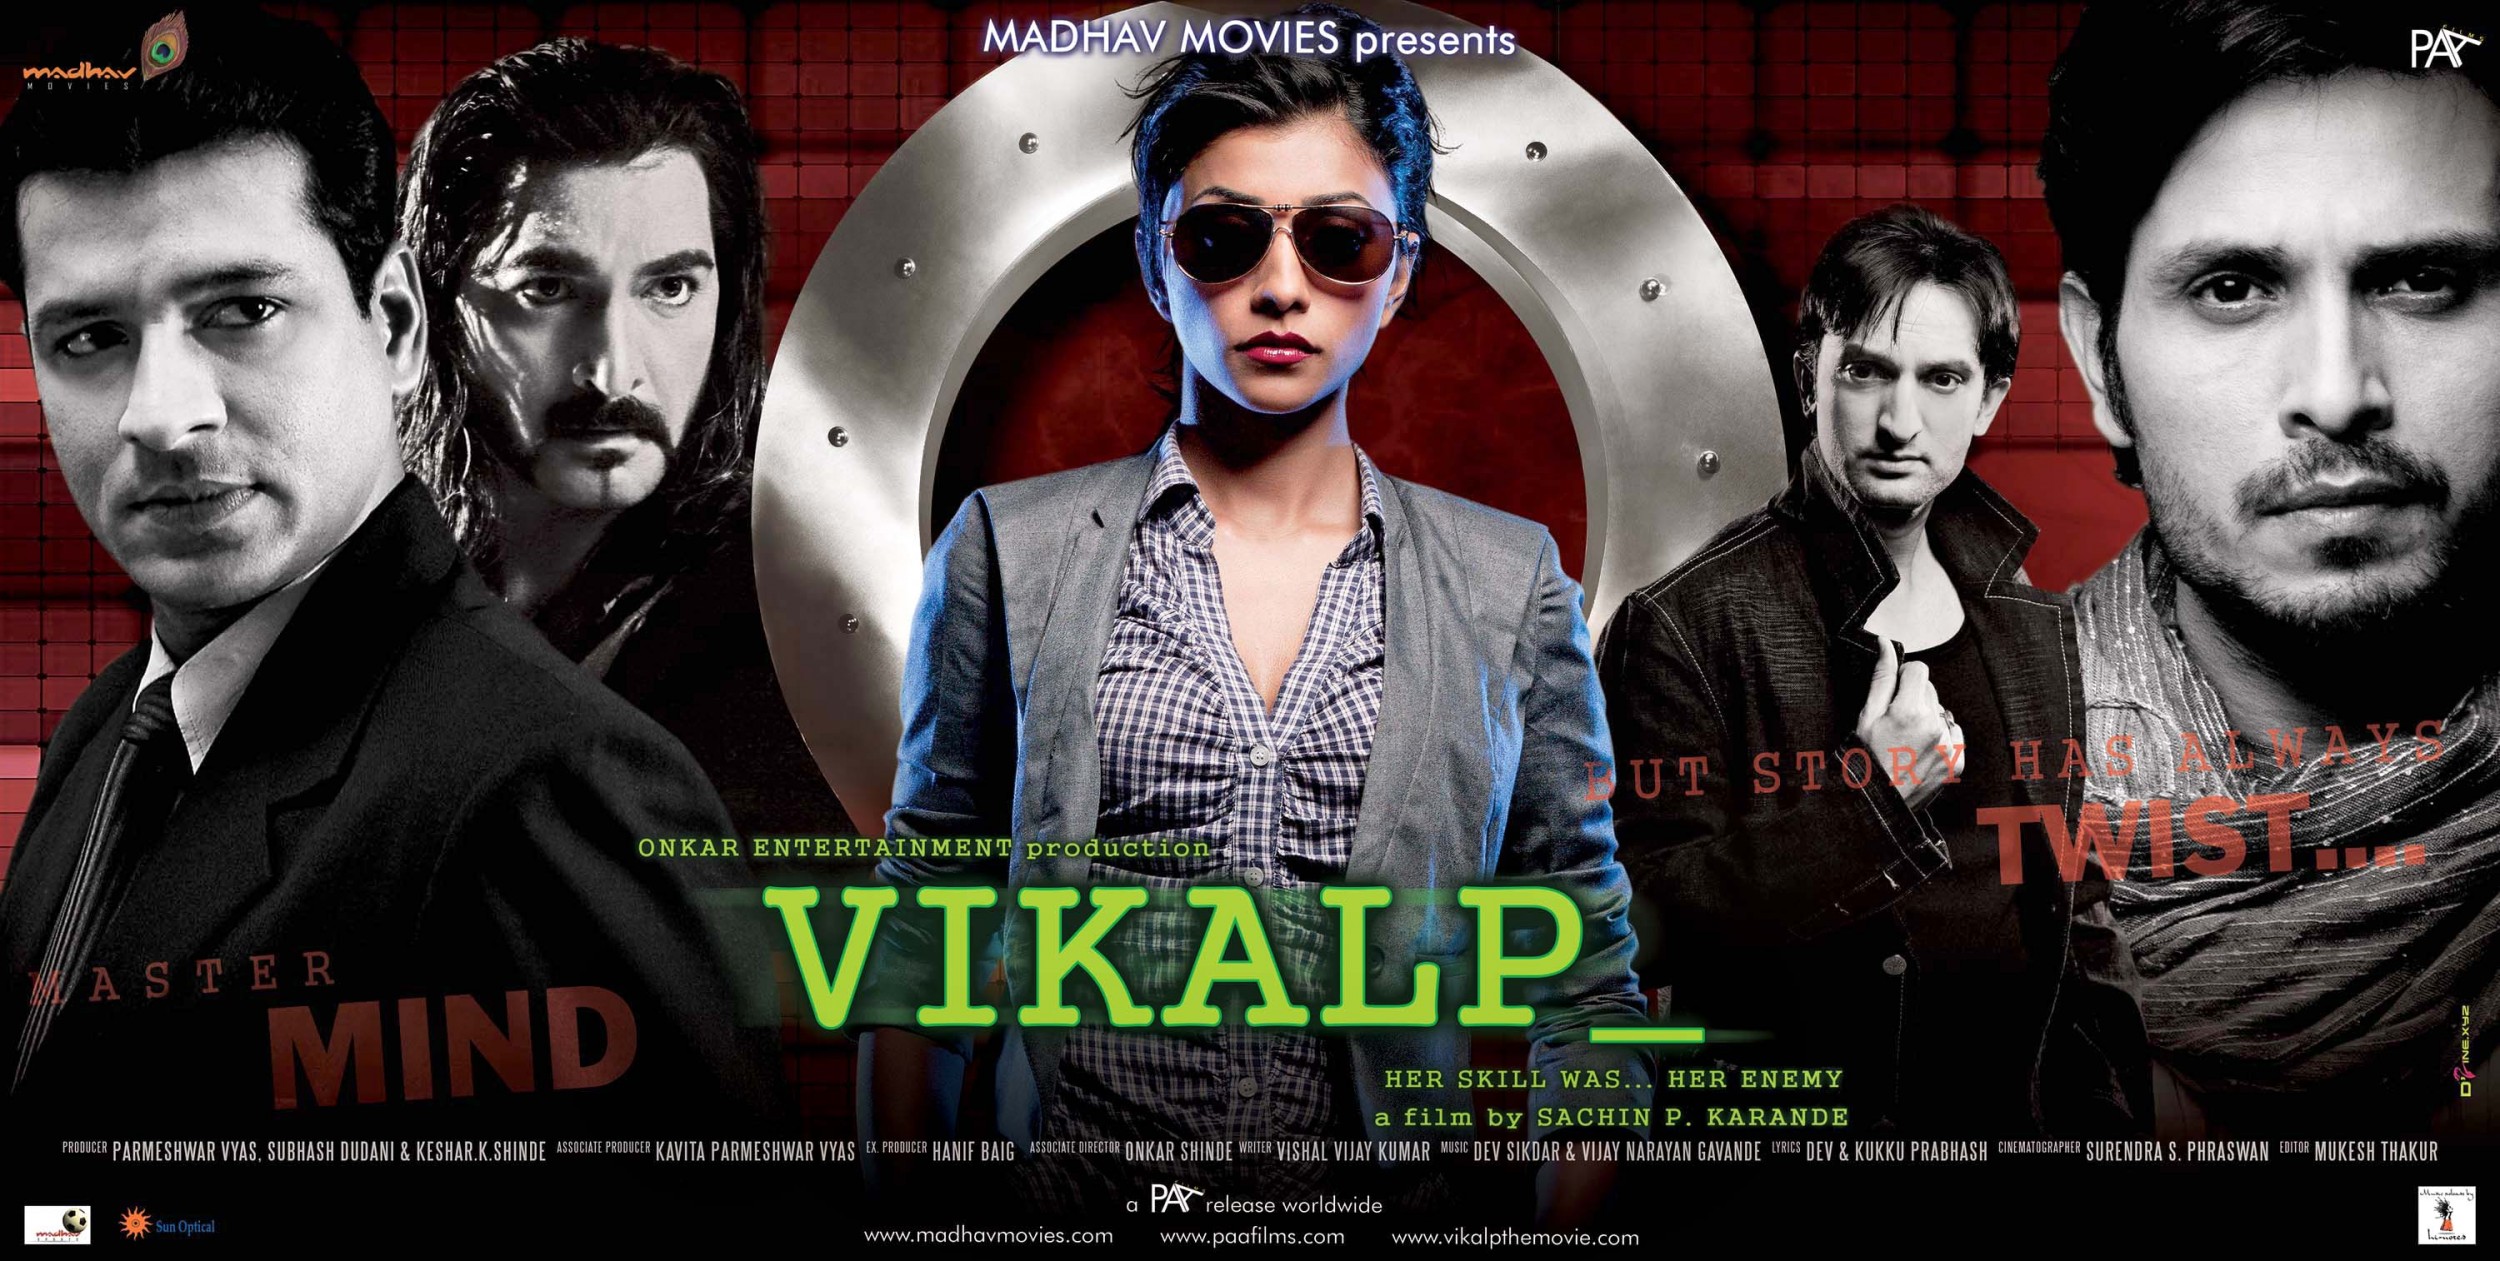 Mega Sized Movie Poster Image for Vikalp (#4 of 8)